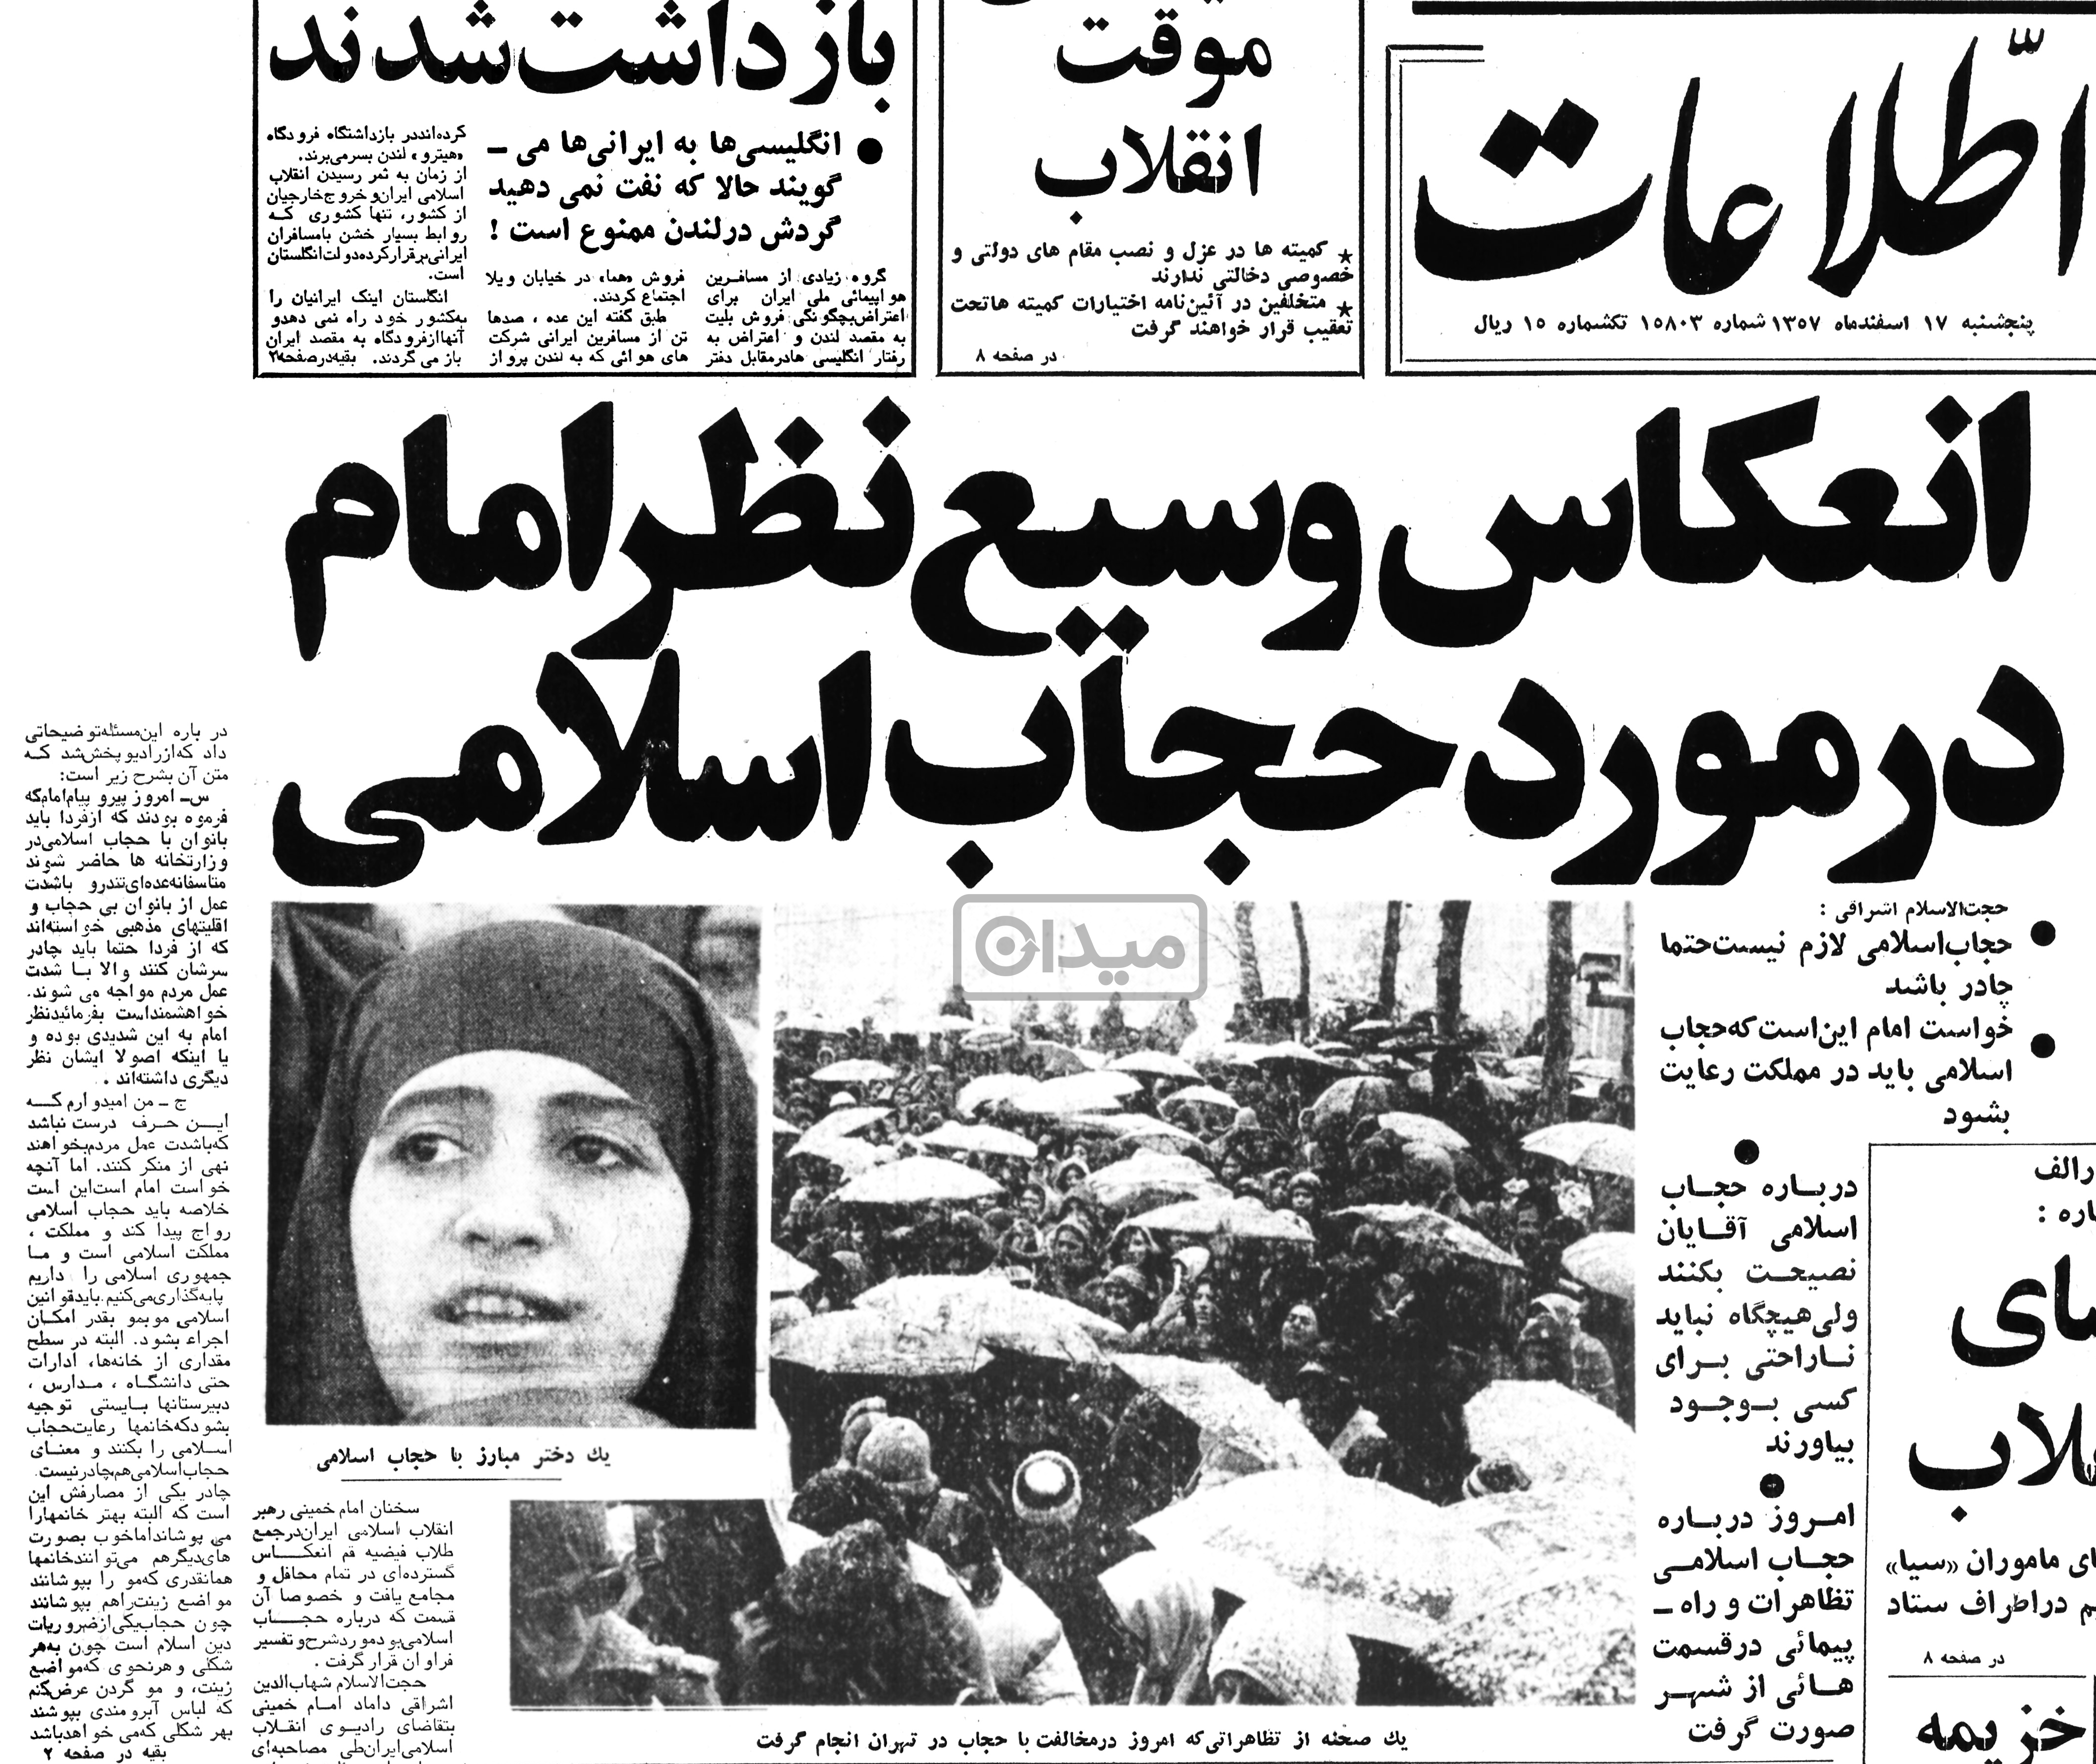 اسفند ۱۳۵۷: اولین روز جهانی زن بعد از انقلاب